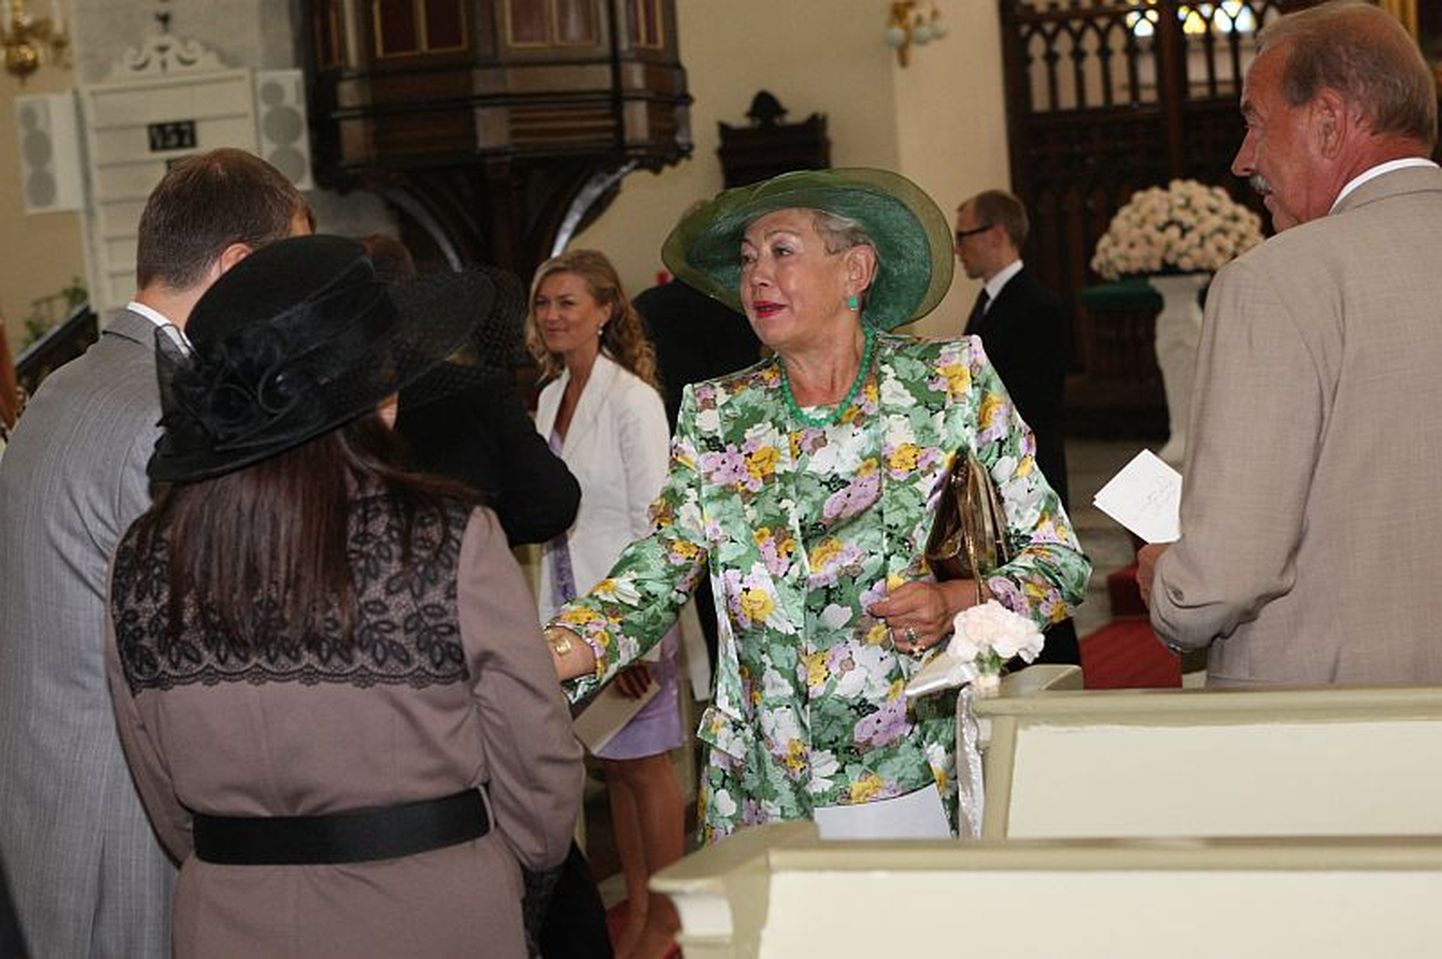 Keit Pentus ja Rain Rosimannus abiellusid 10. augustil Tallinna Jaani kirikus. 
Alati elegantne ja šikk Iivi Eenmaa